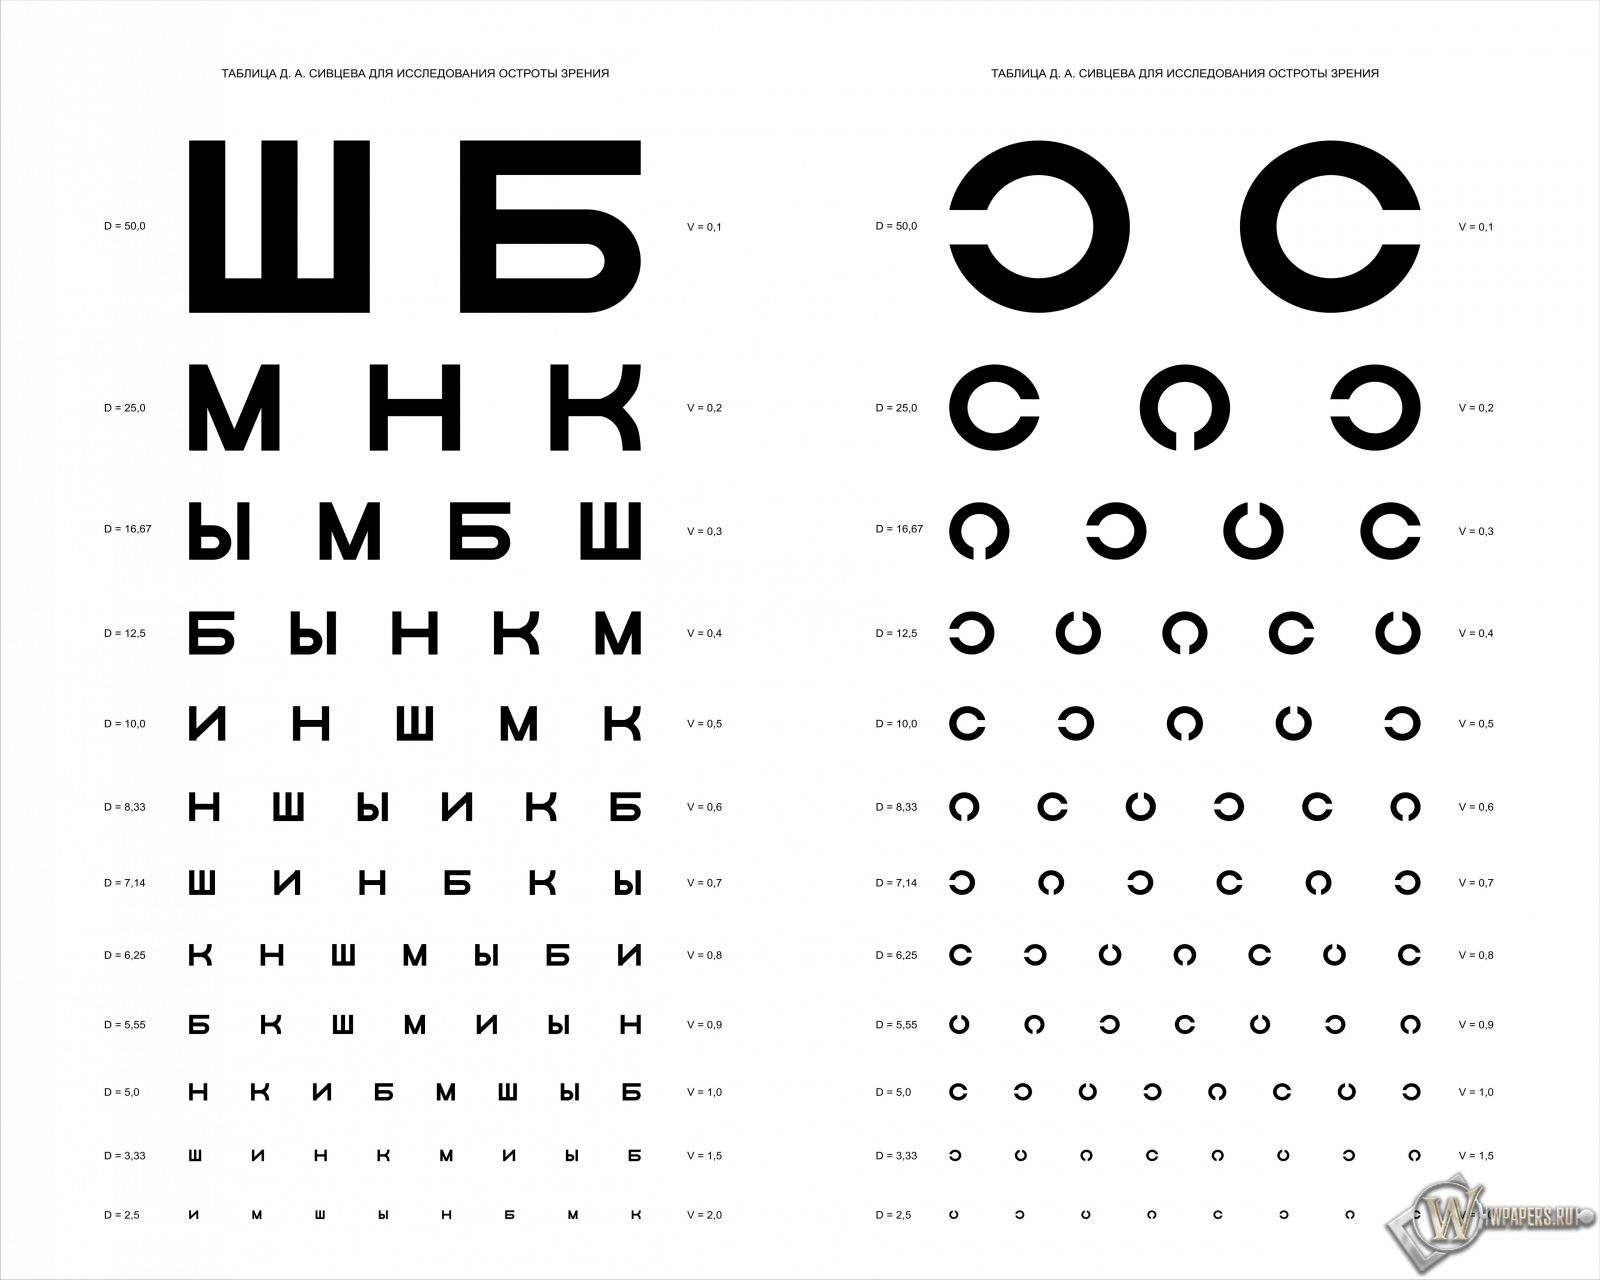 Таблица Д.А. Сивцева для проверки зрения 1600x1280